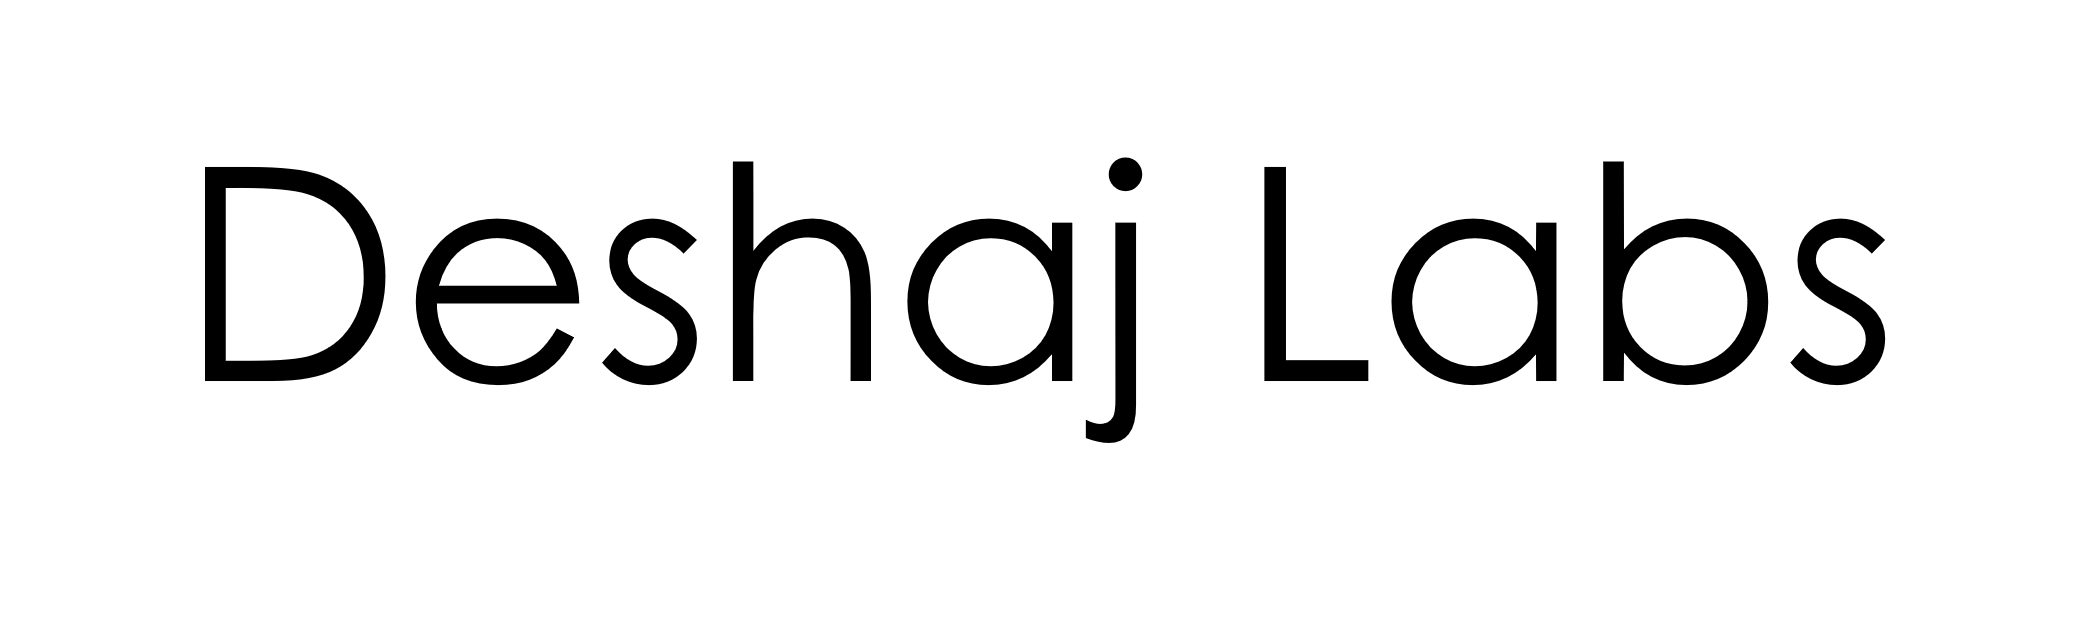 logo black text